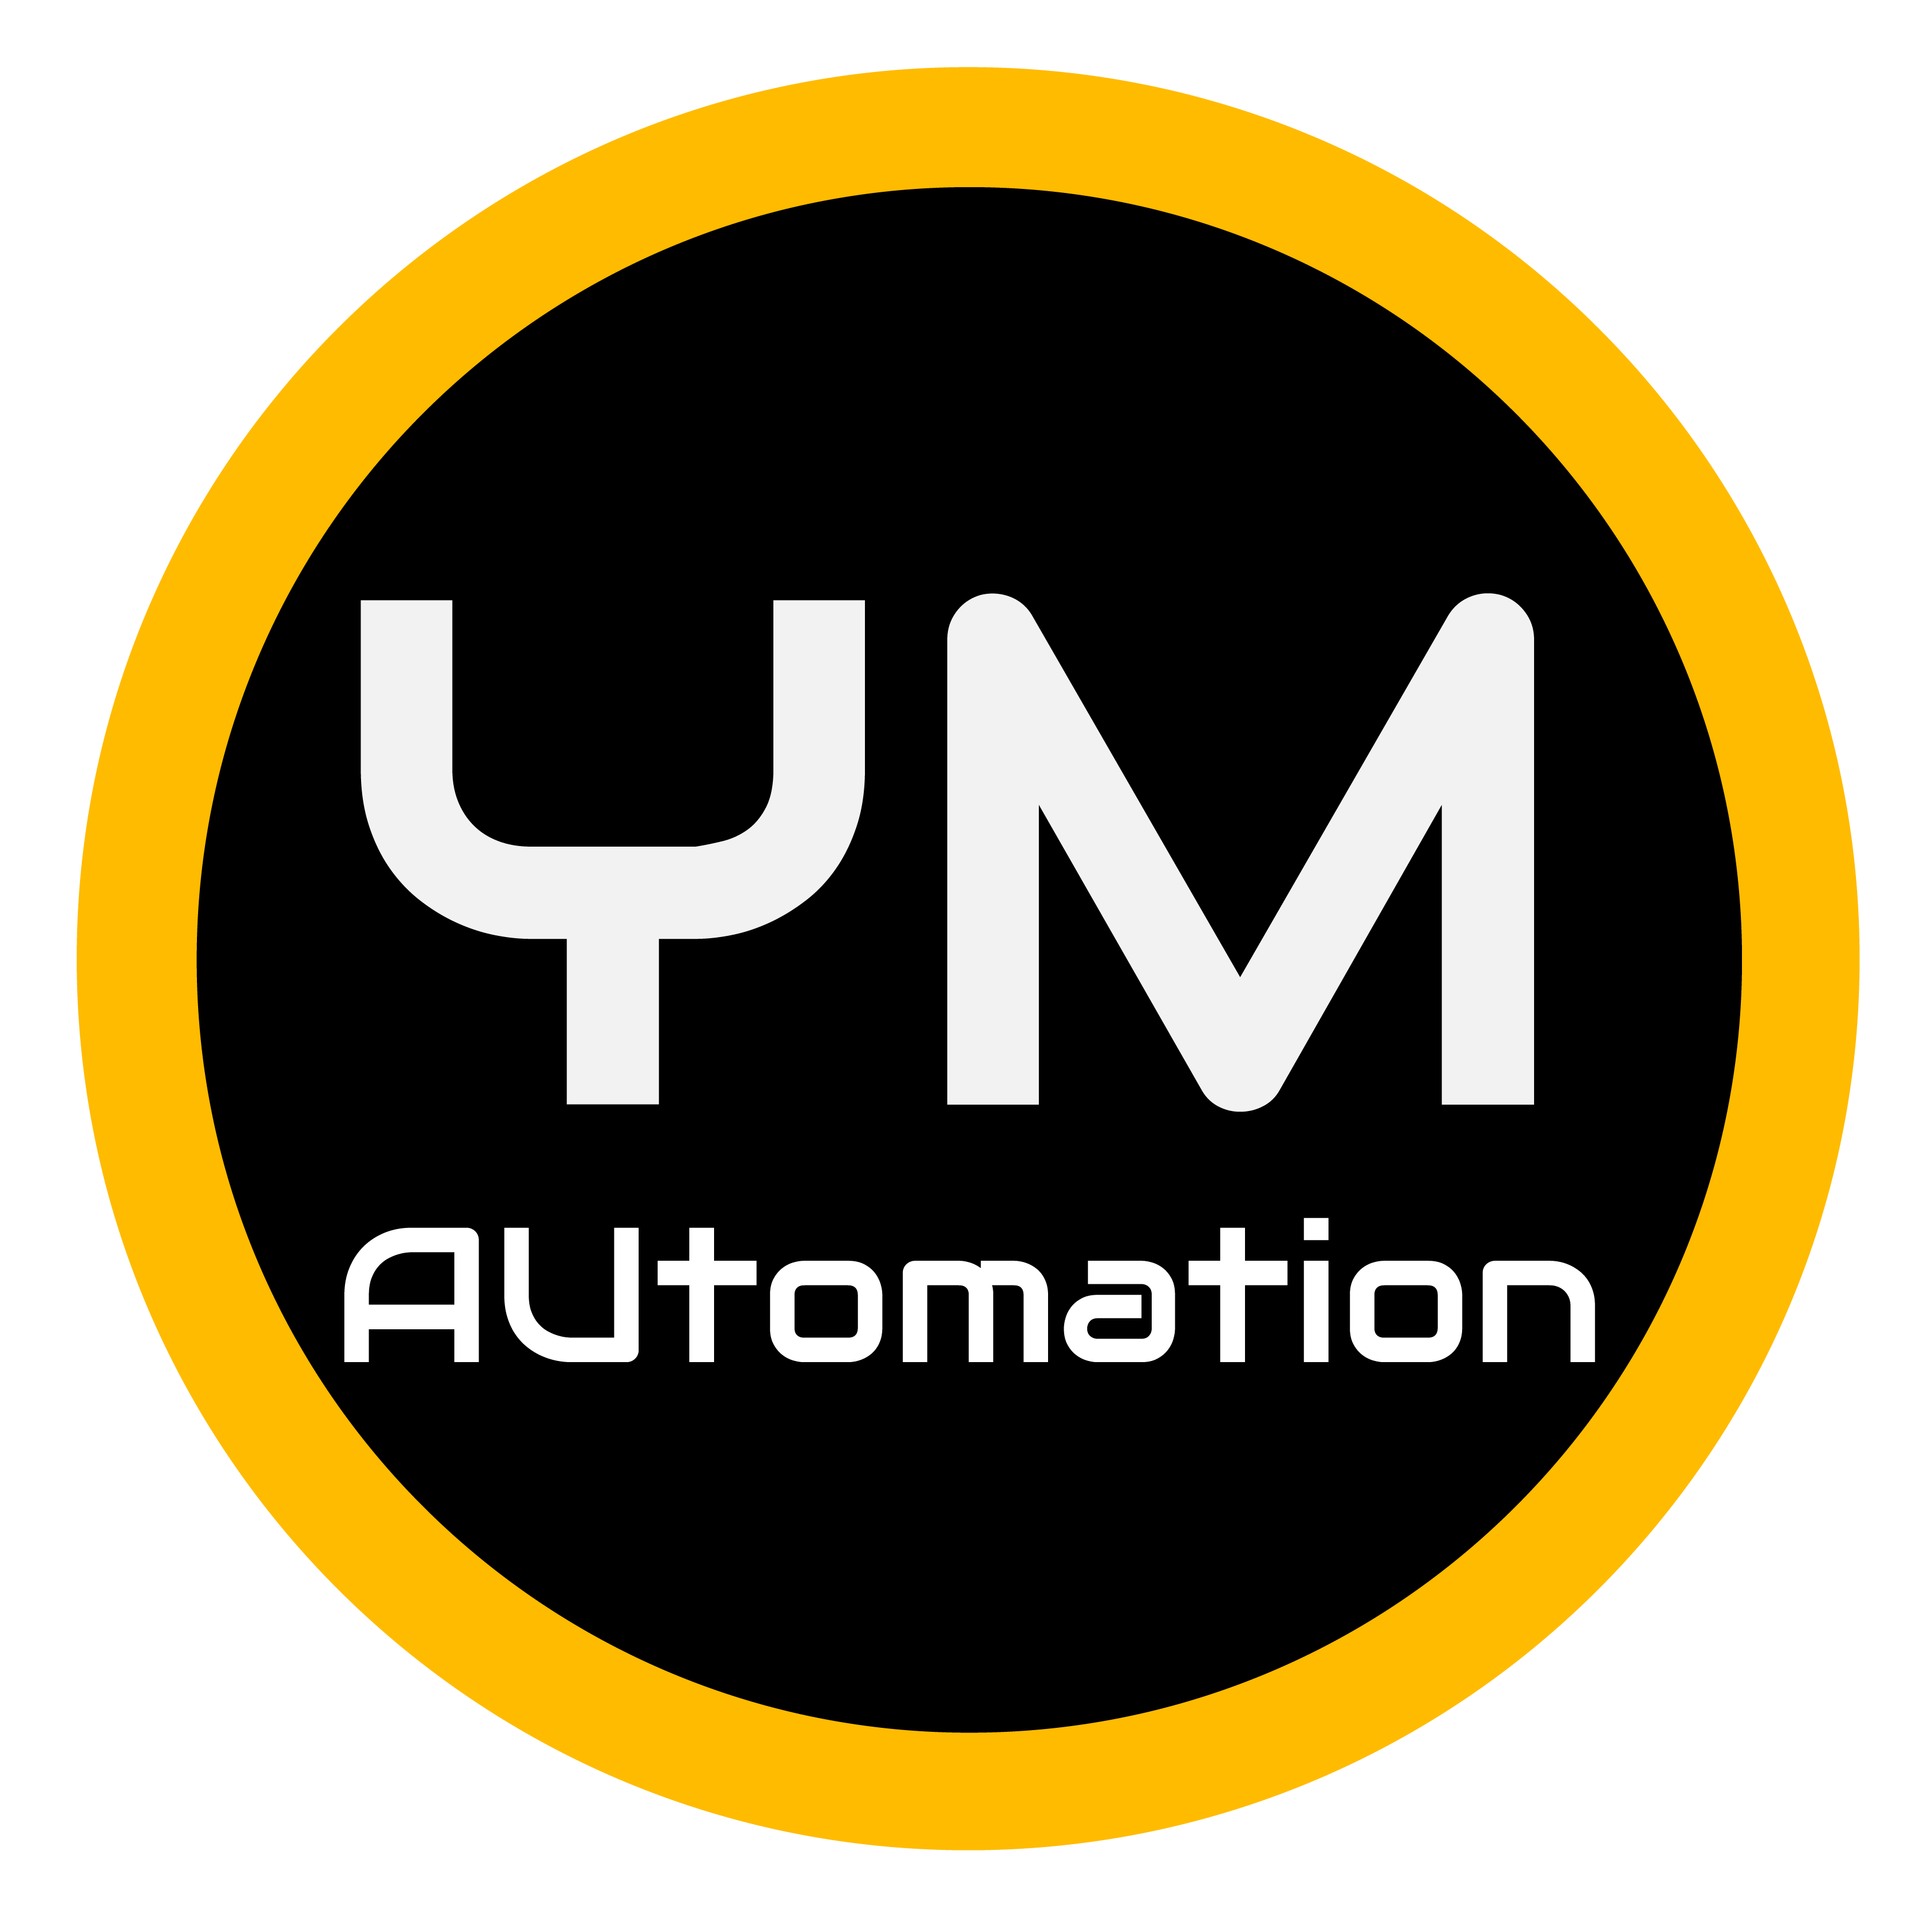 YM Automation